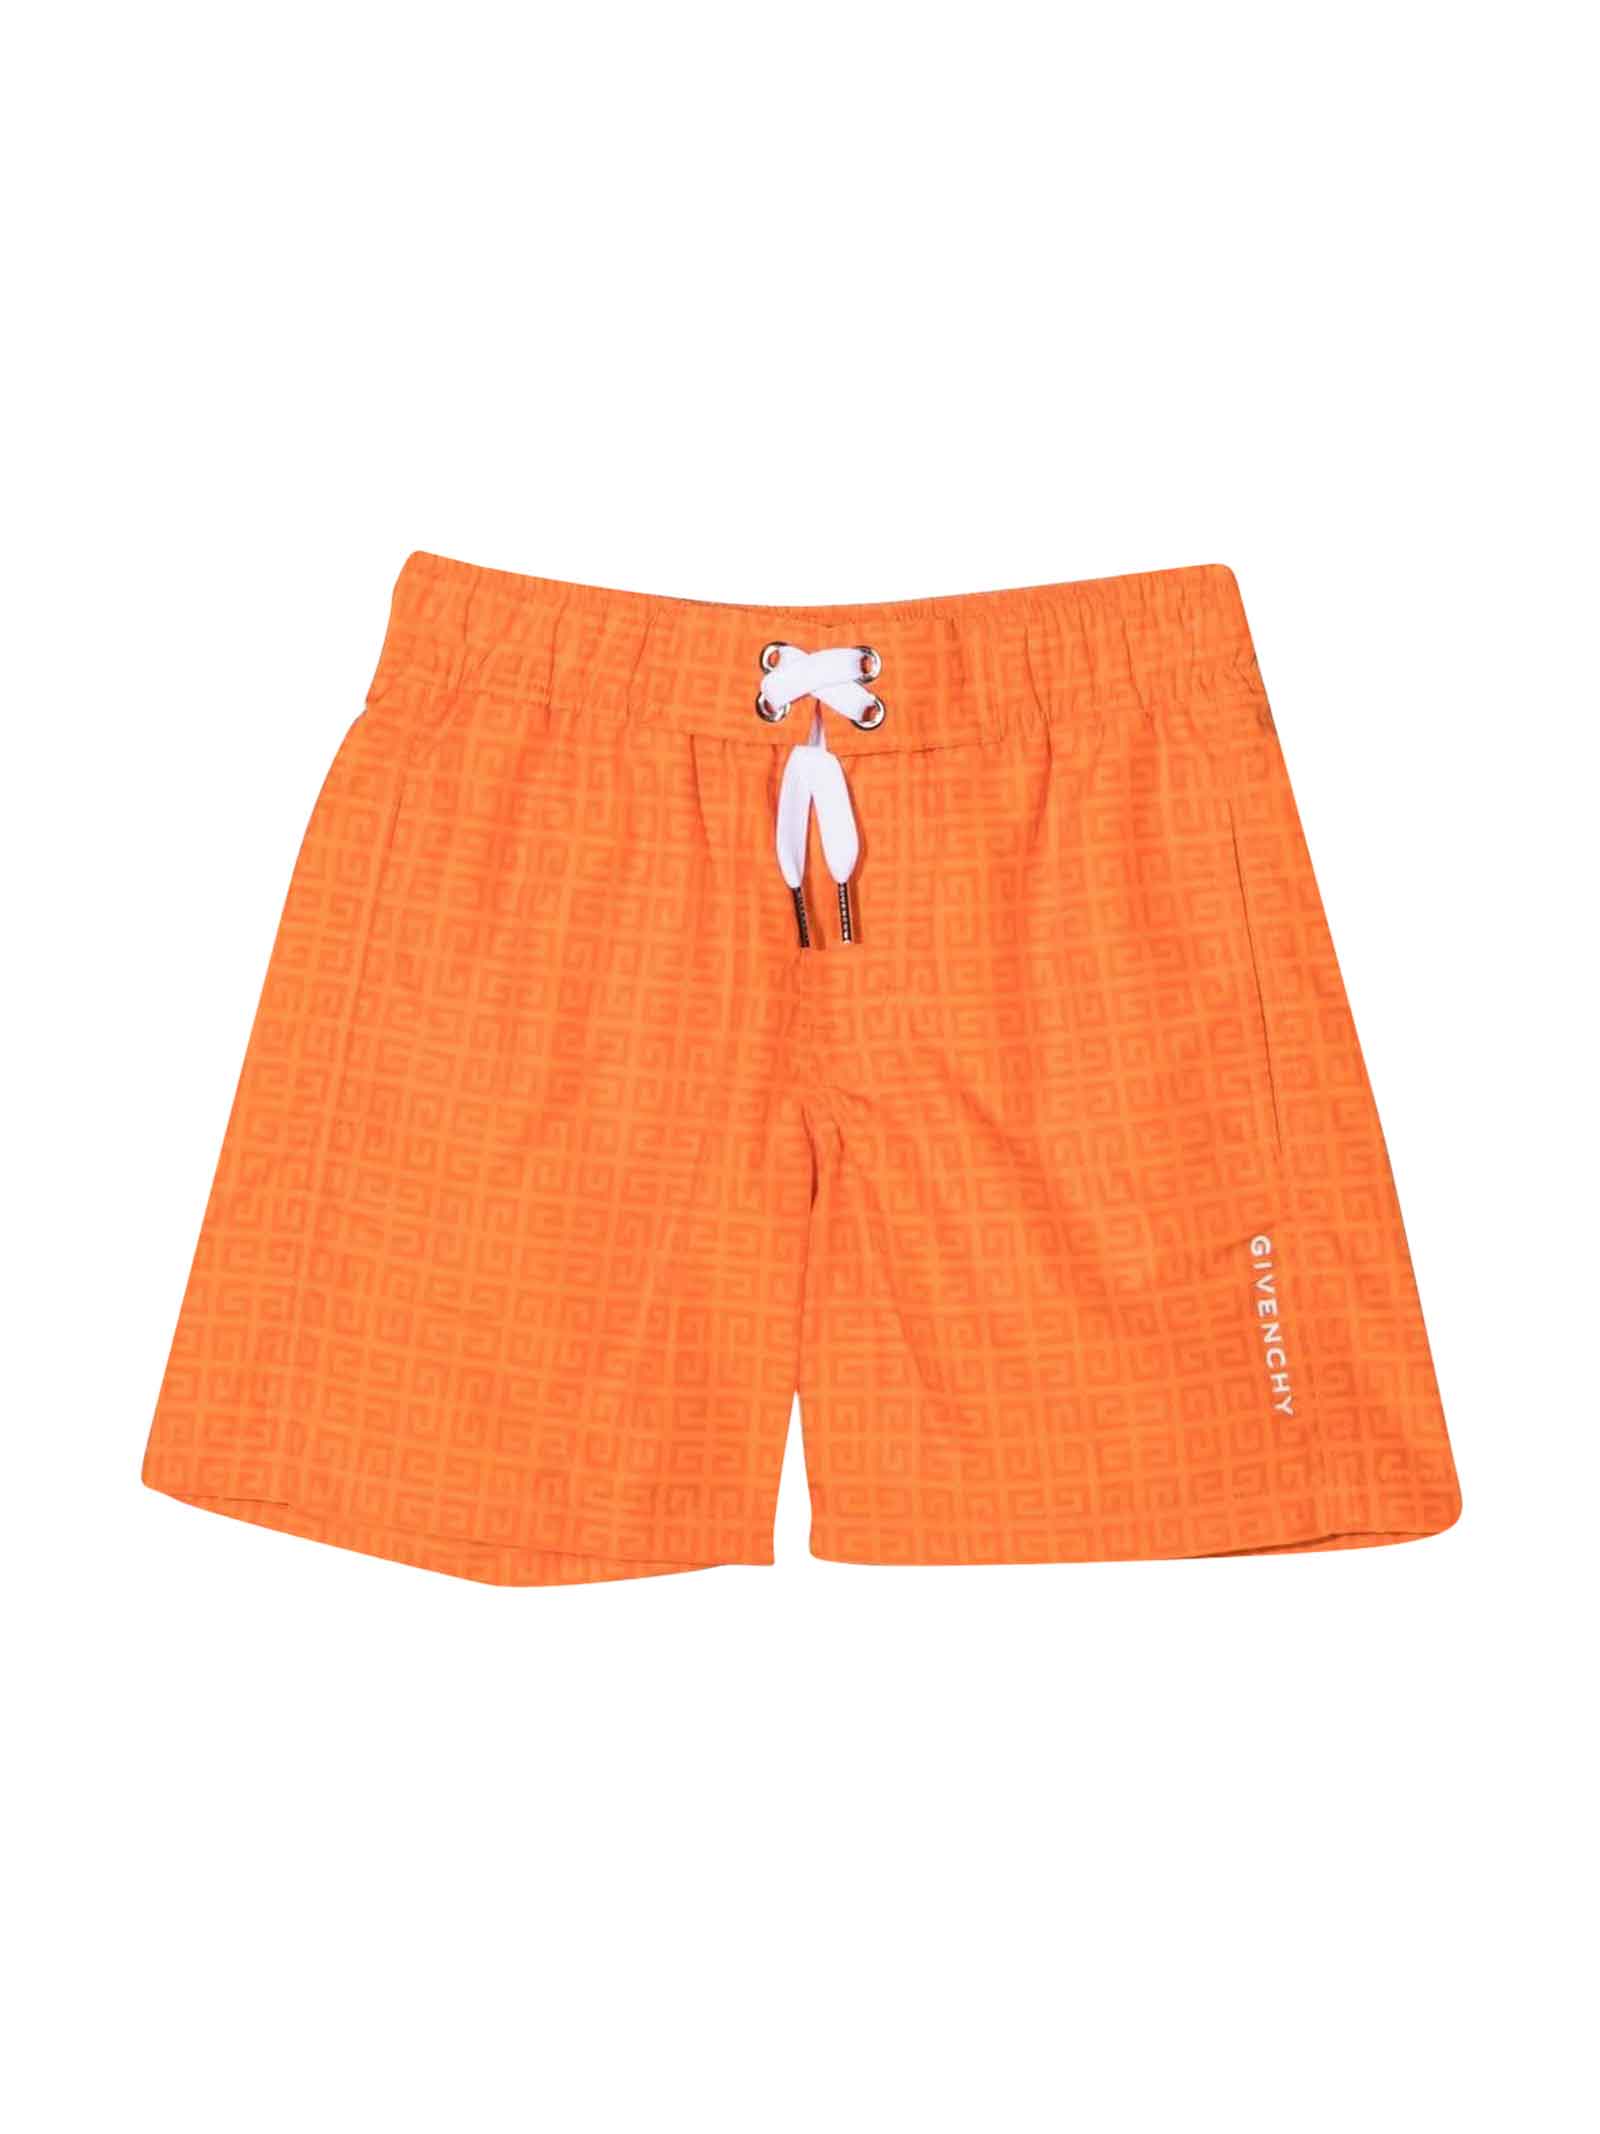 Givenchy Orange Boy Swimsuit